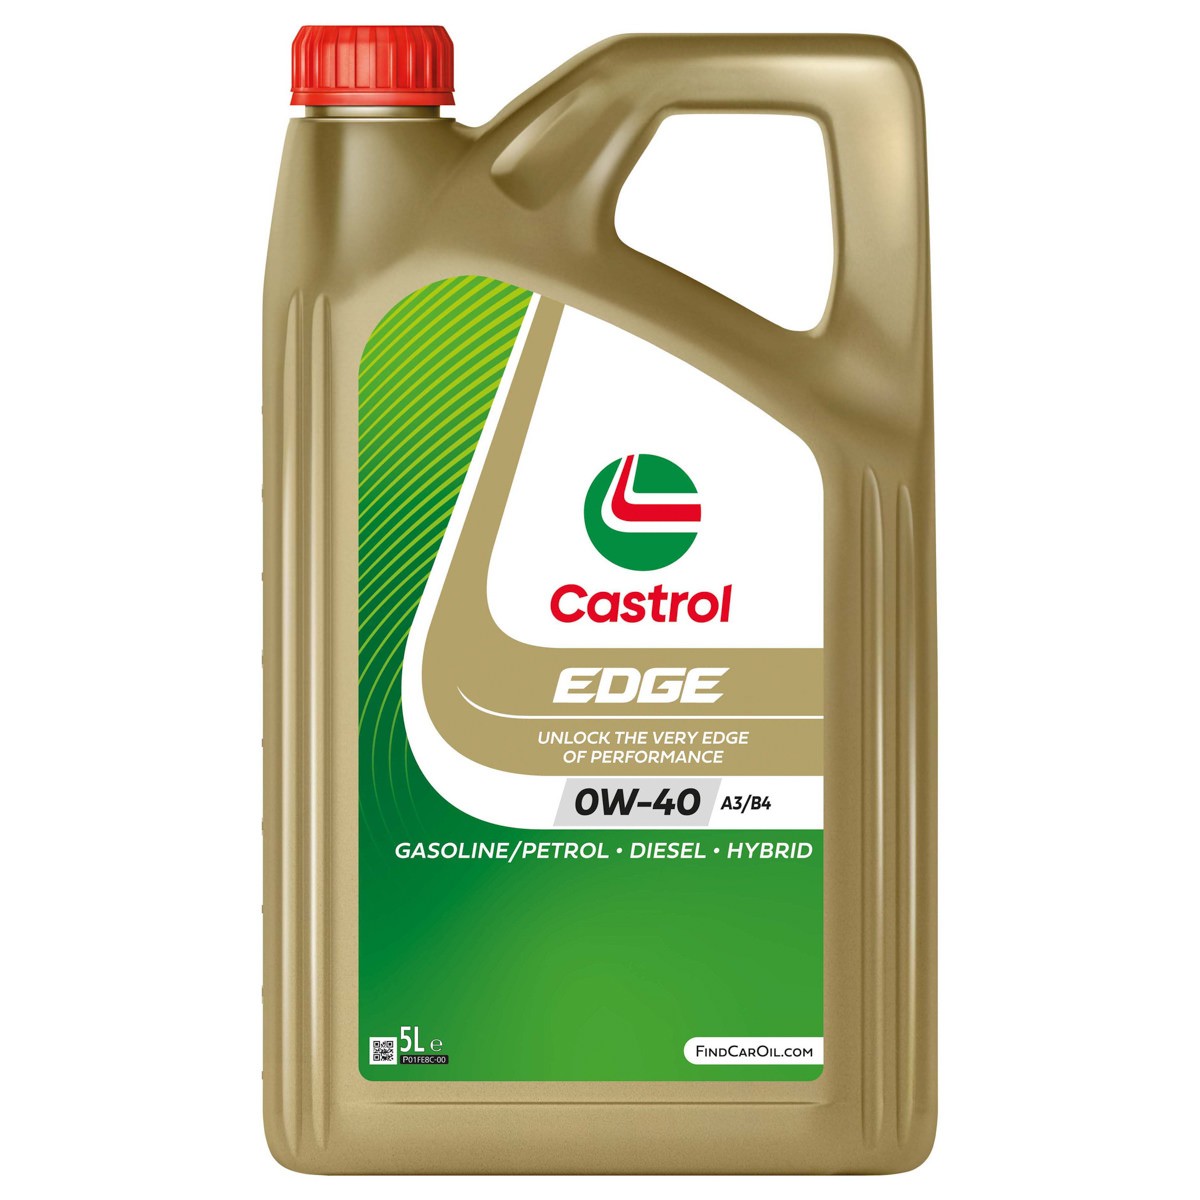 Automobile oil 0W-40 longlife petrol - 15F6B7 CASTROL EDGE, A3/B4